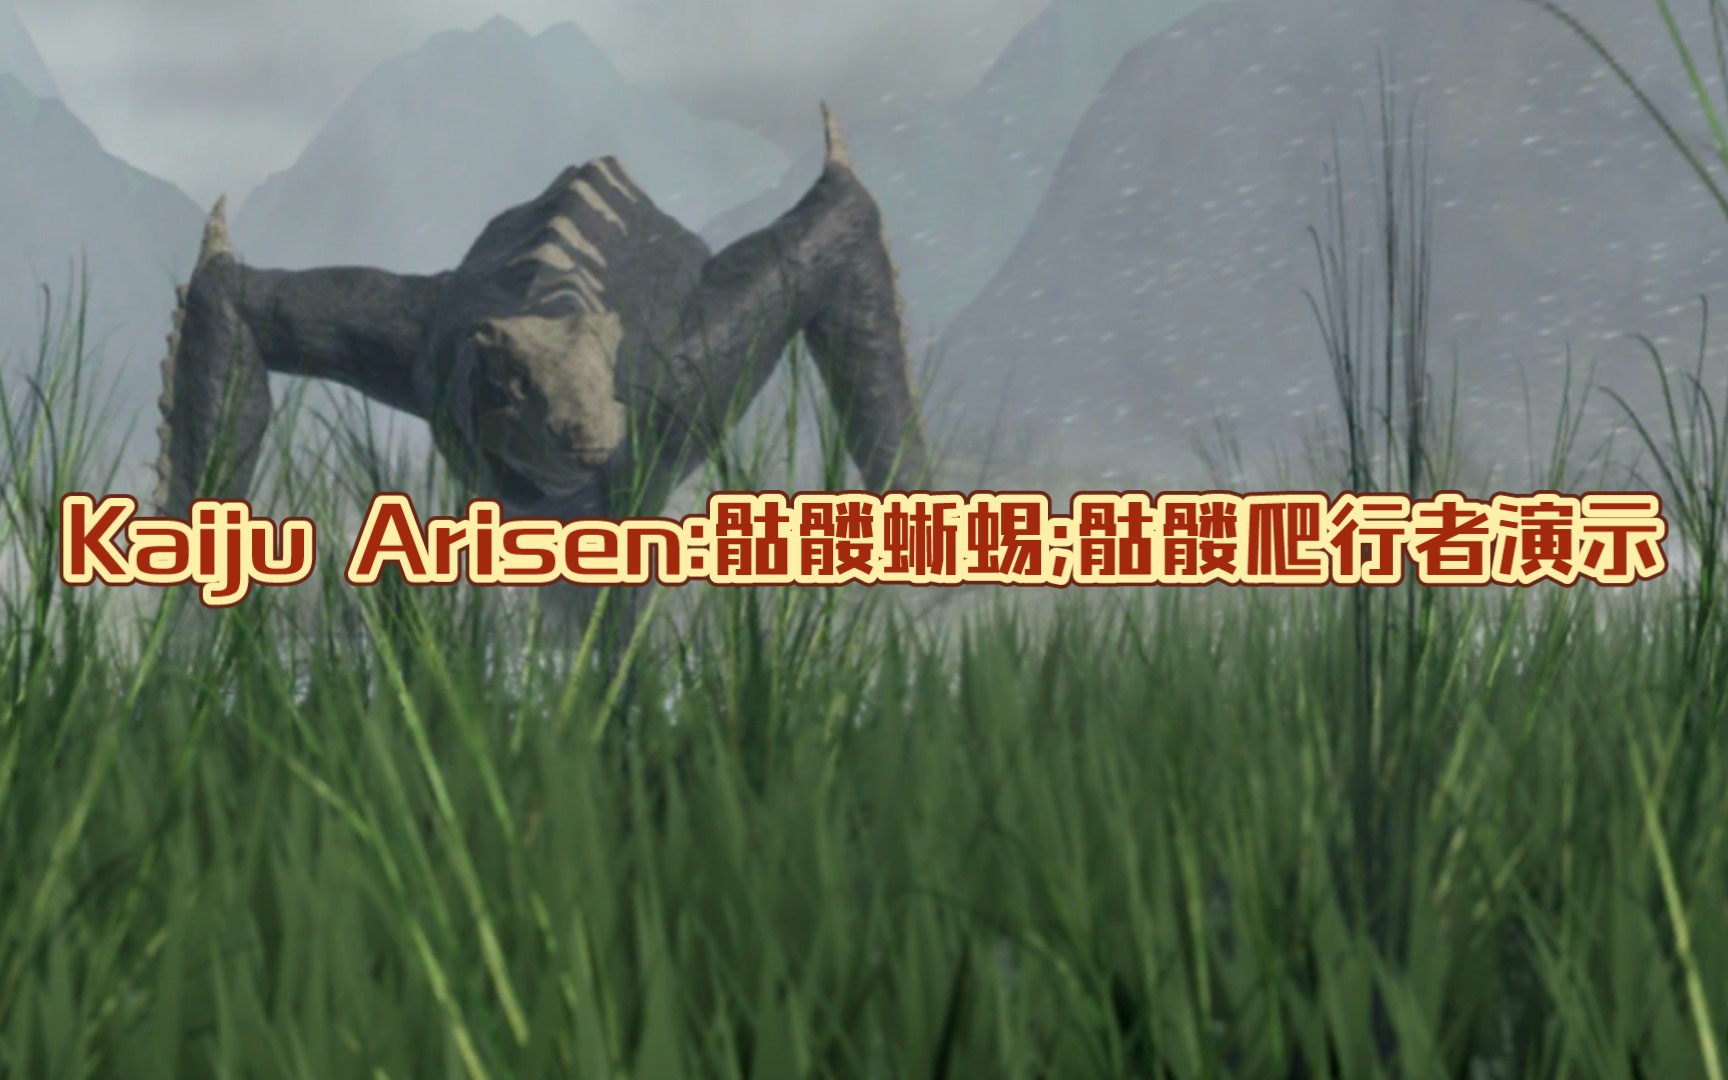 kaiju arisen:骷髅蜥蜴;骷髅爬行者演示